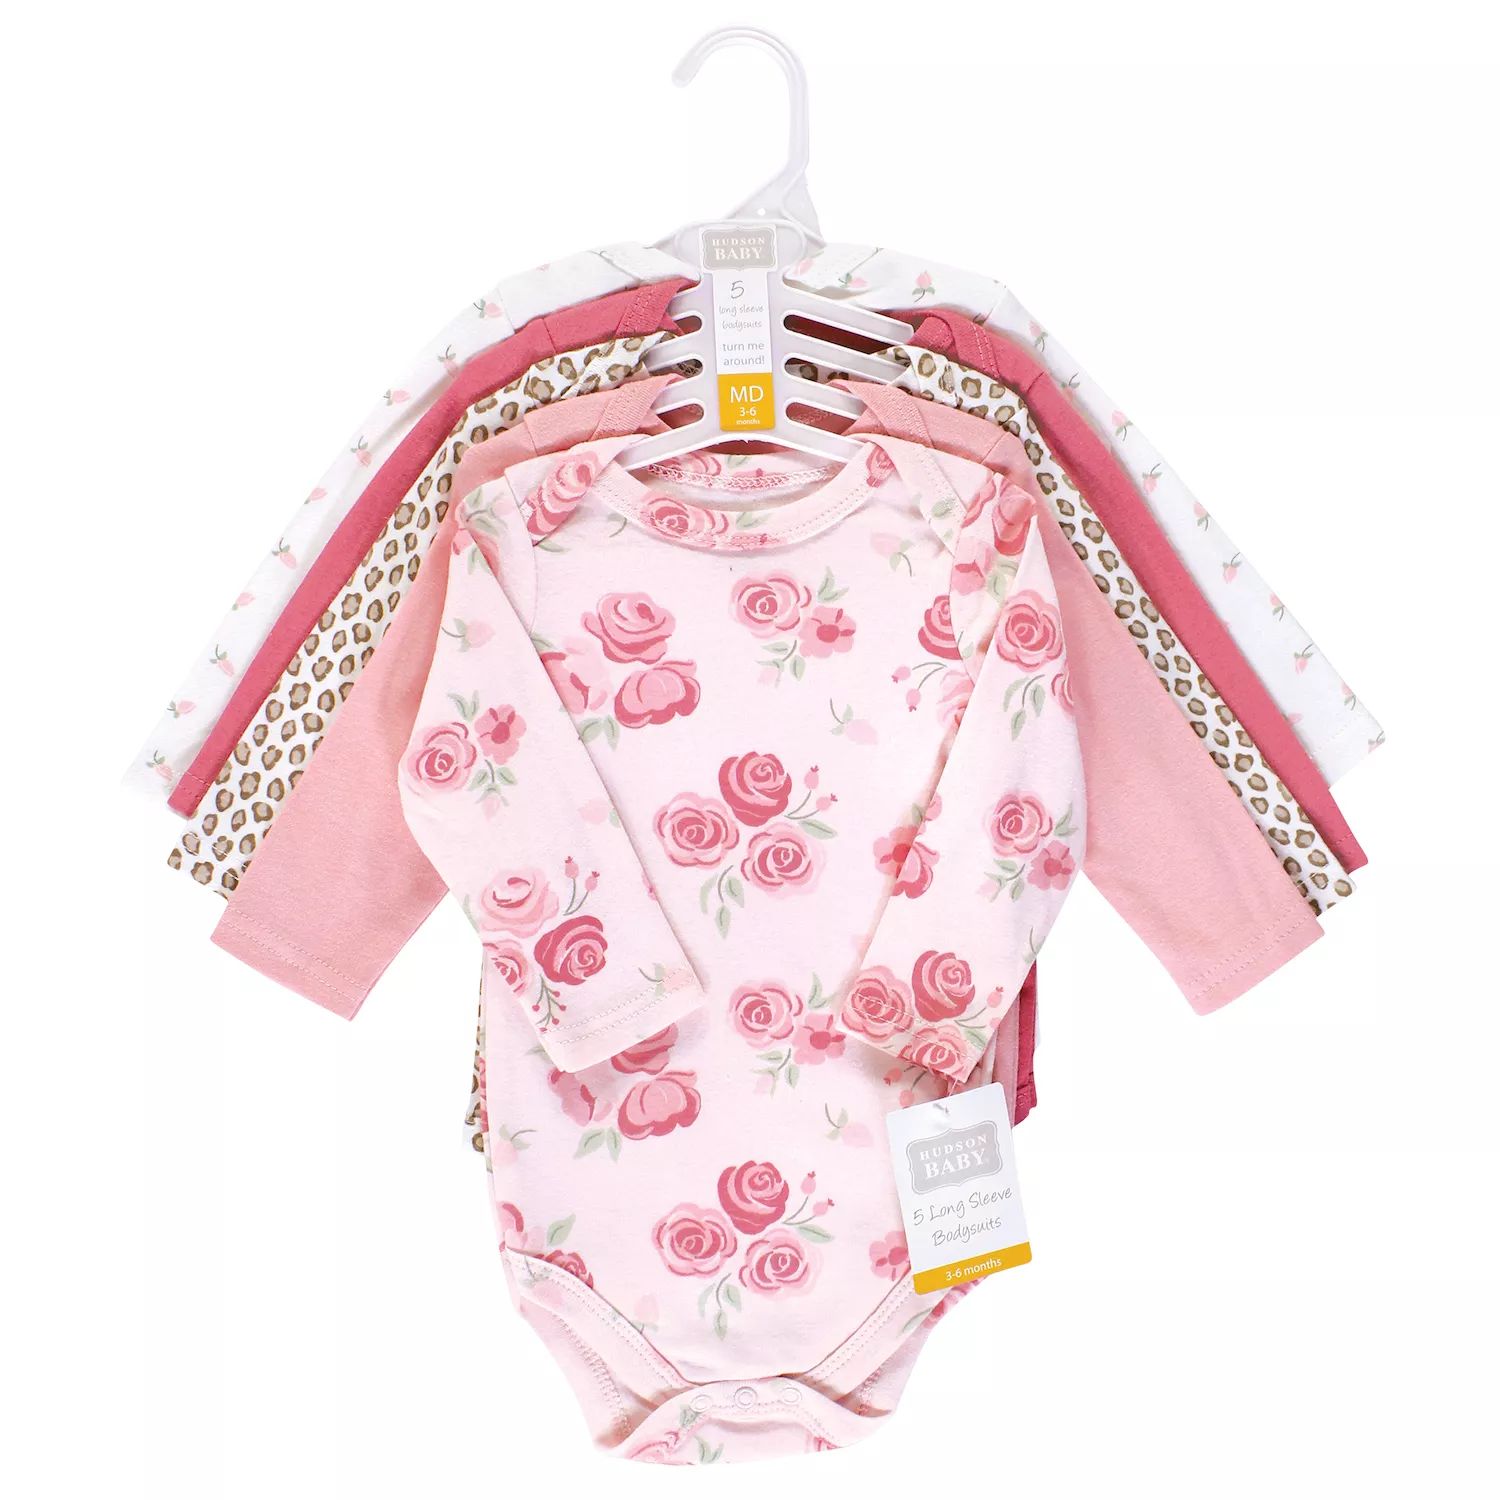 Хлопковые боди с длинными рукавами для маленьких девочек Hudson, набор из 5 штук с леопардовым принтом розового цвета Hudson Baby